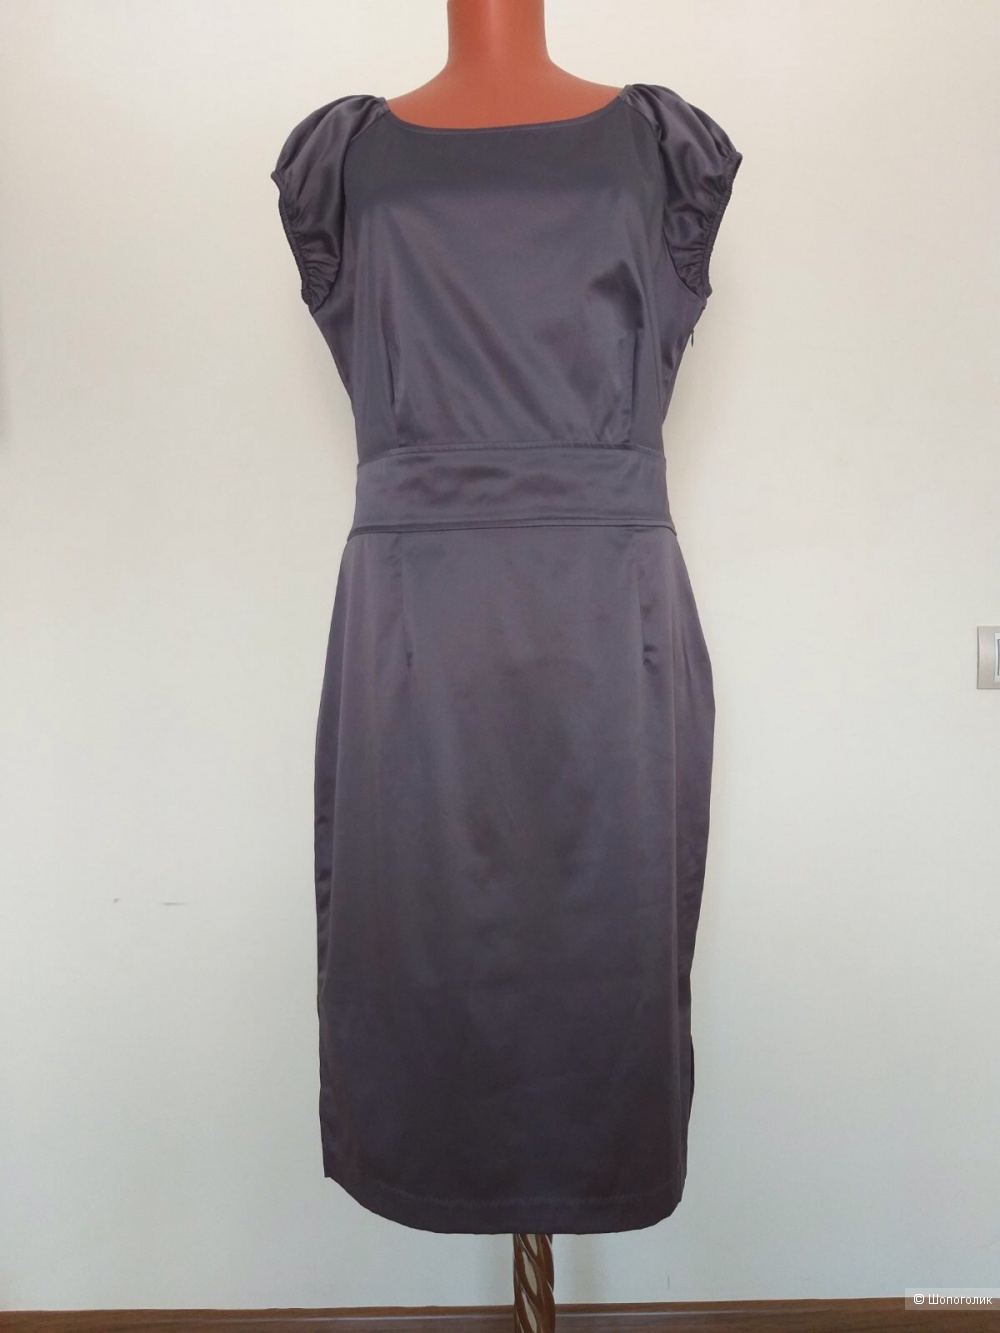 Платье Wool Street,  размер 40 EUR, на 46-48-50